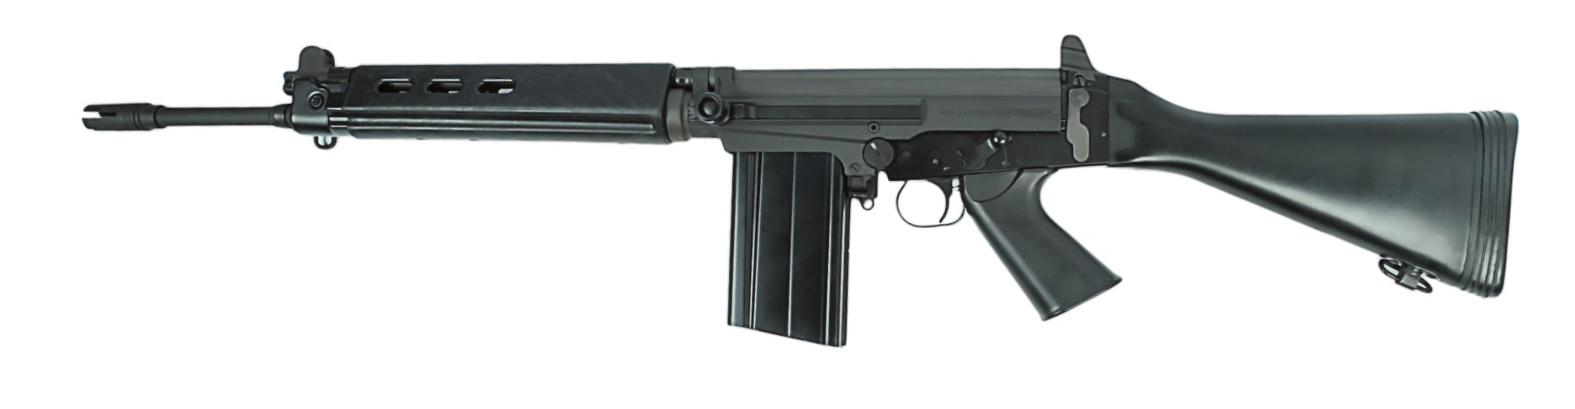 DSA SA-58 7.62x51mm FN/FAL Semi-Automatic Rifle - FFL # DSA35099 (K1S1)